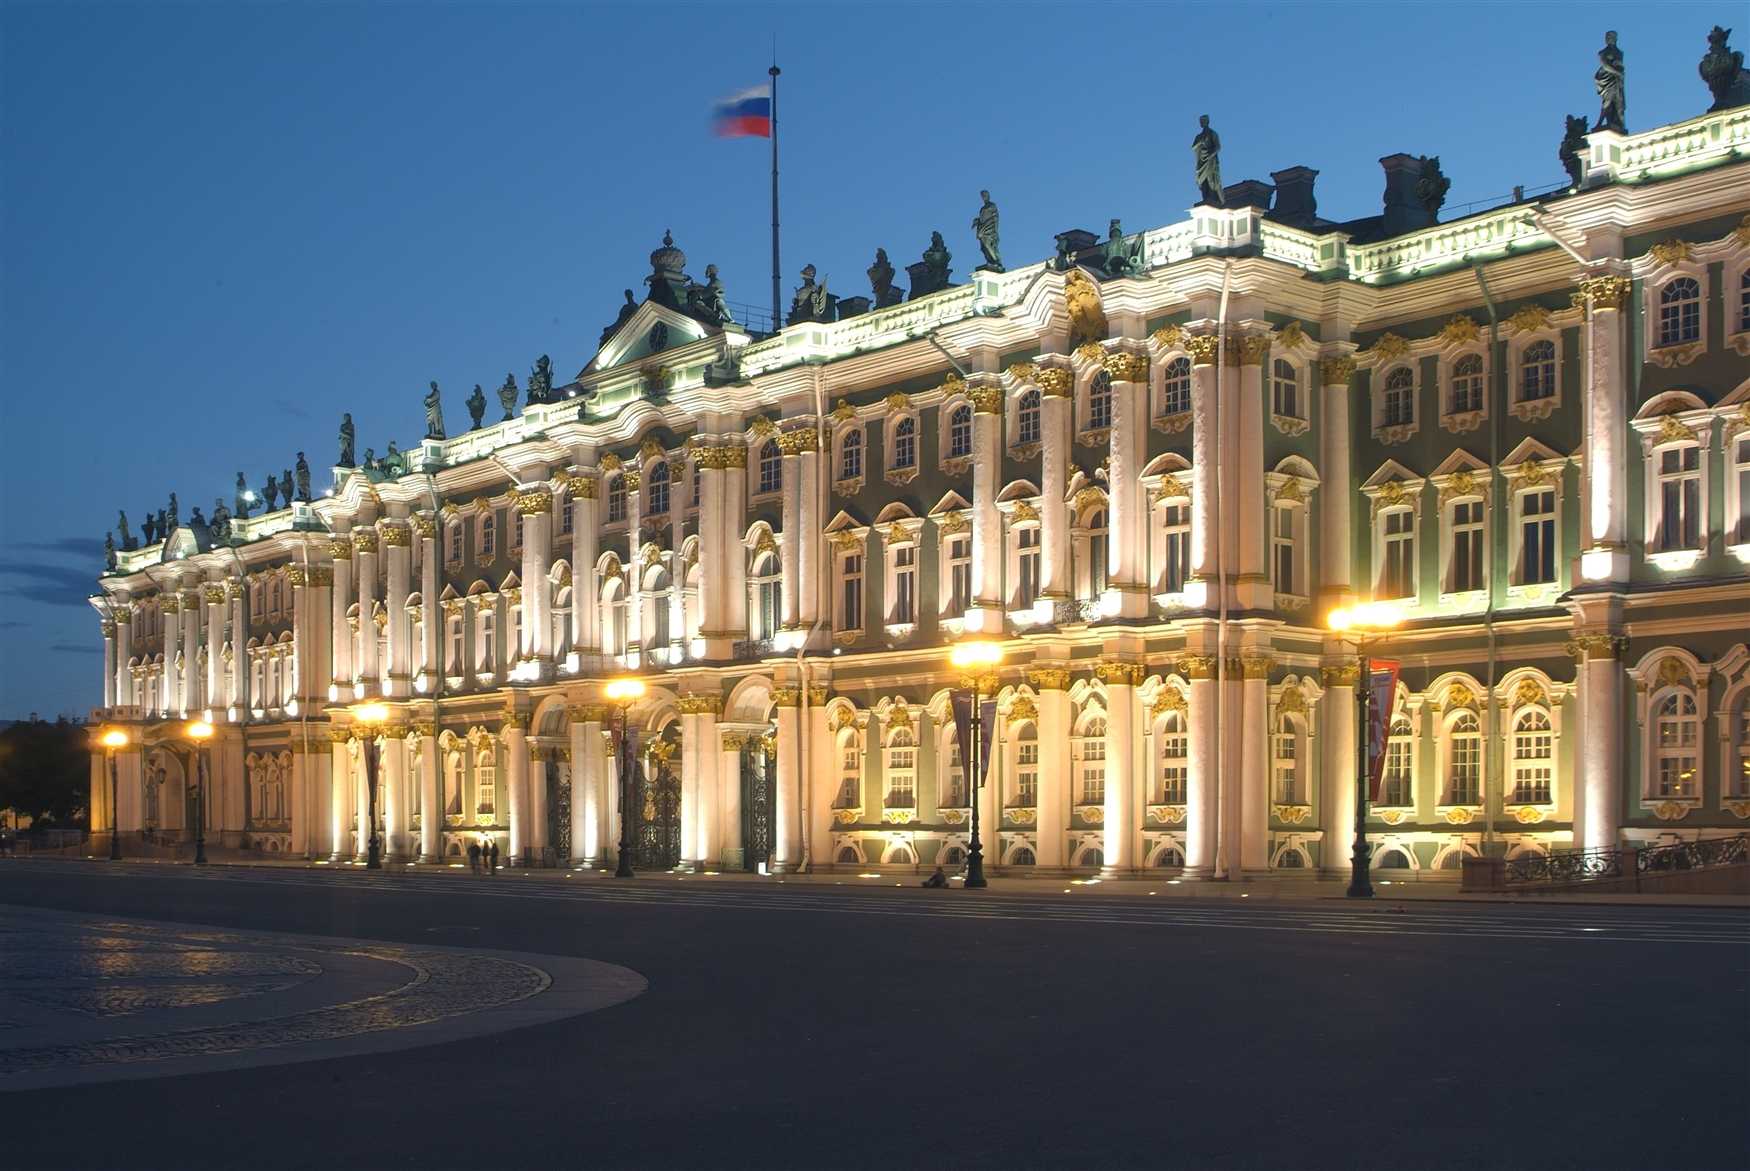 Зимний дворец в санкт-петербурге — подробная информация с фото